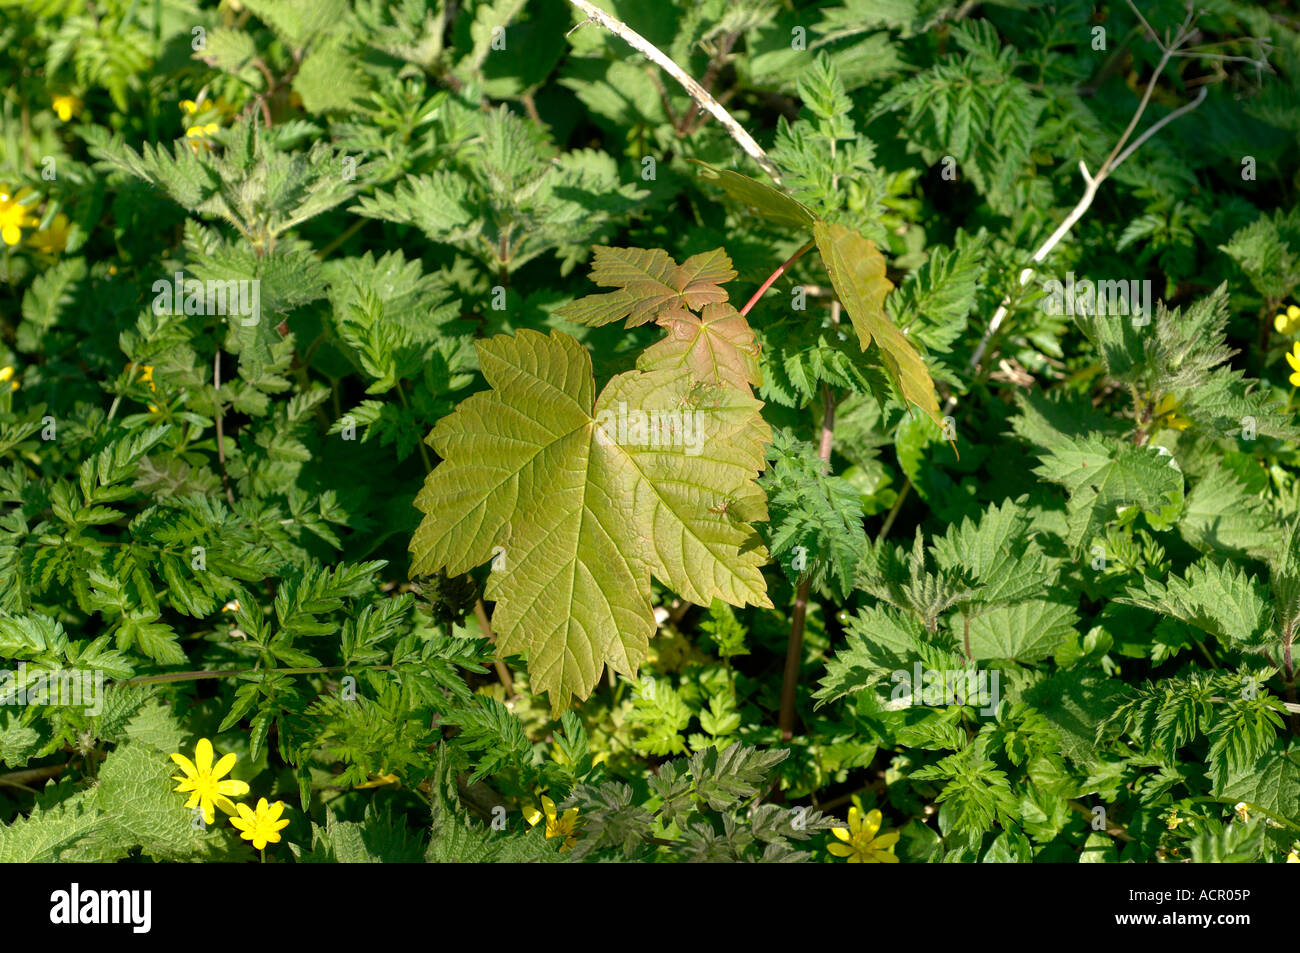 Acer pseudoplatanus Sycamore émergents des gaules par d'autres plantes sur un plancher de bois Banque D'Images